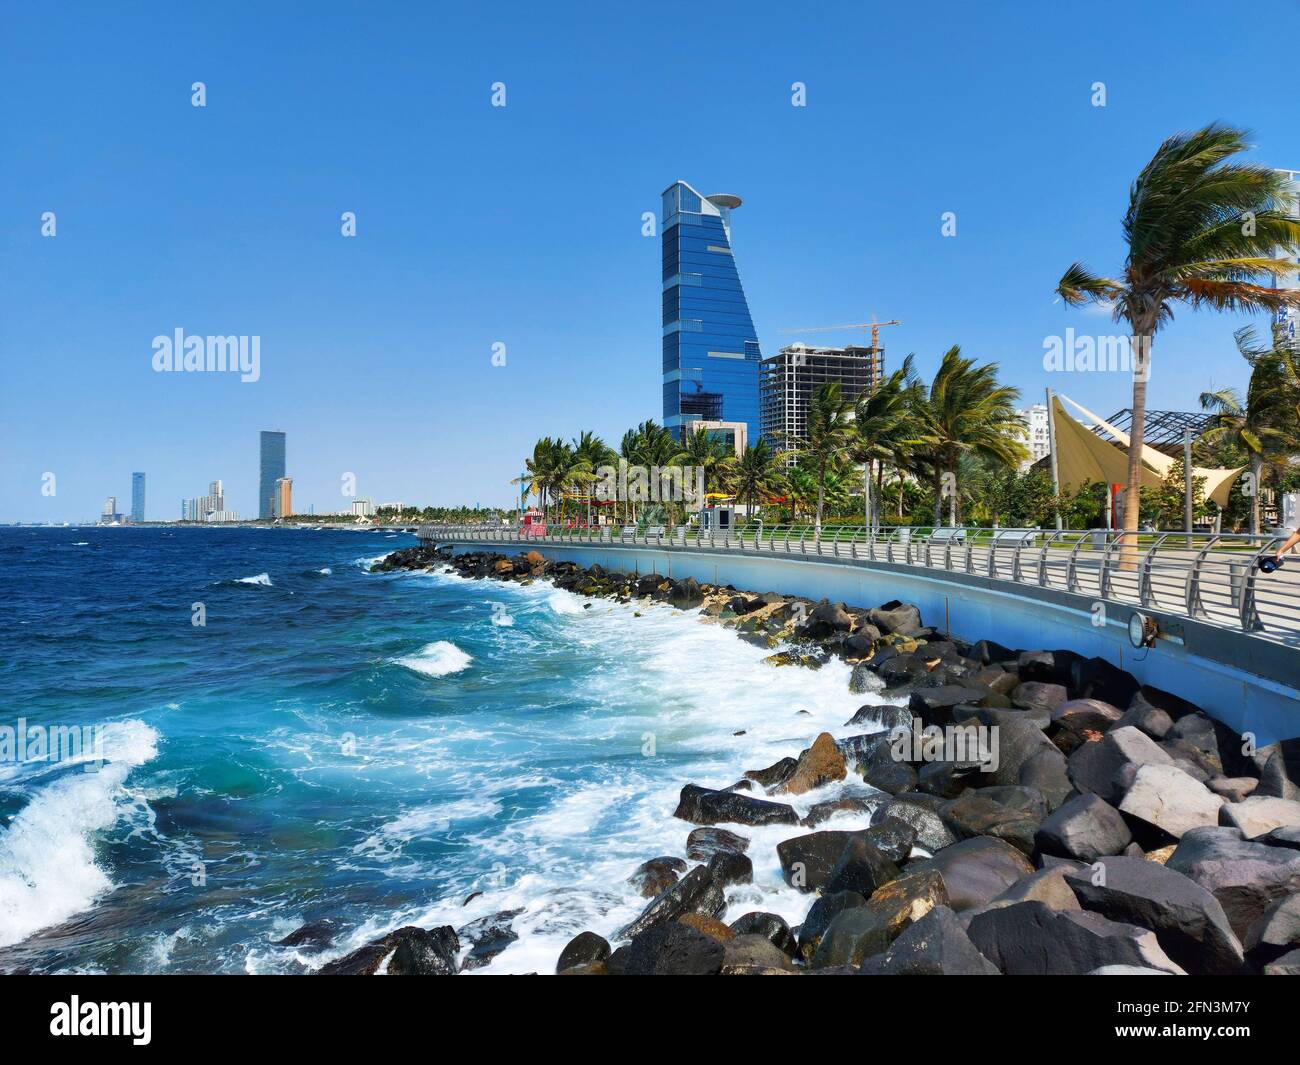 Jeddah, Arabia Saudita - 23 aprile 2021: Bella vista della spiaggia di Jeddah - Corniche del Mar Rosso Foto Stock